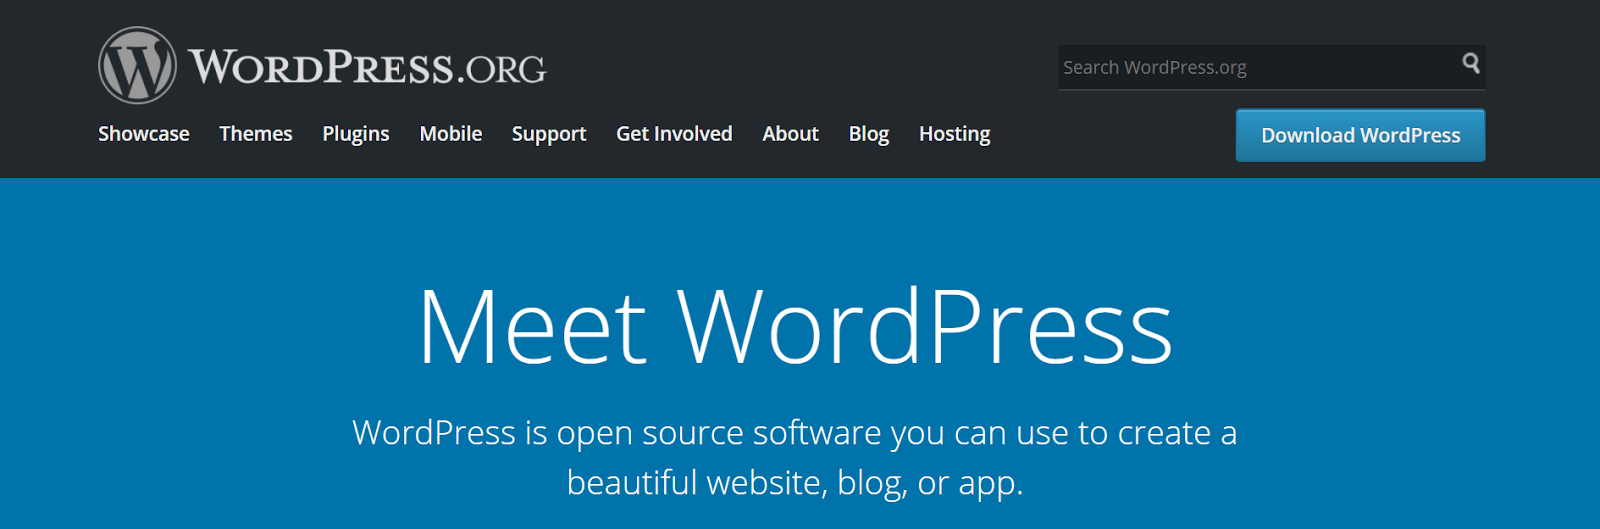 wordpress-homepage.PNG